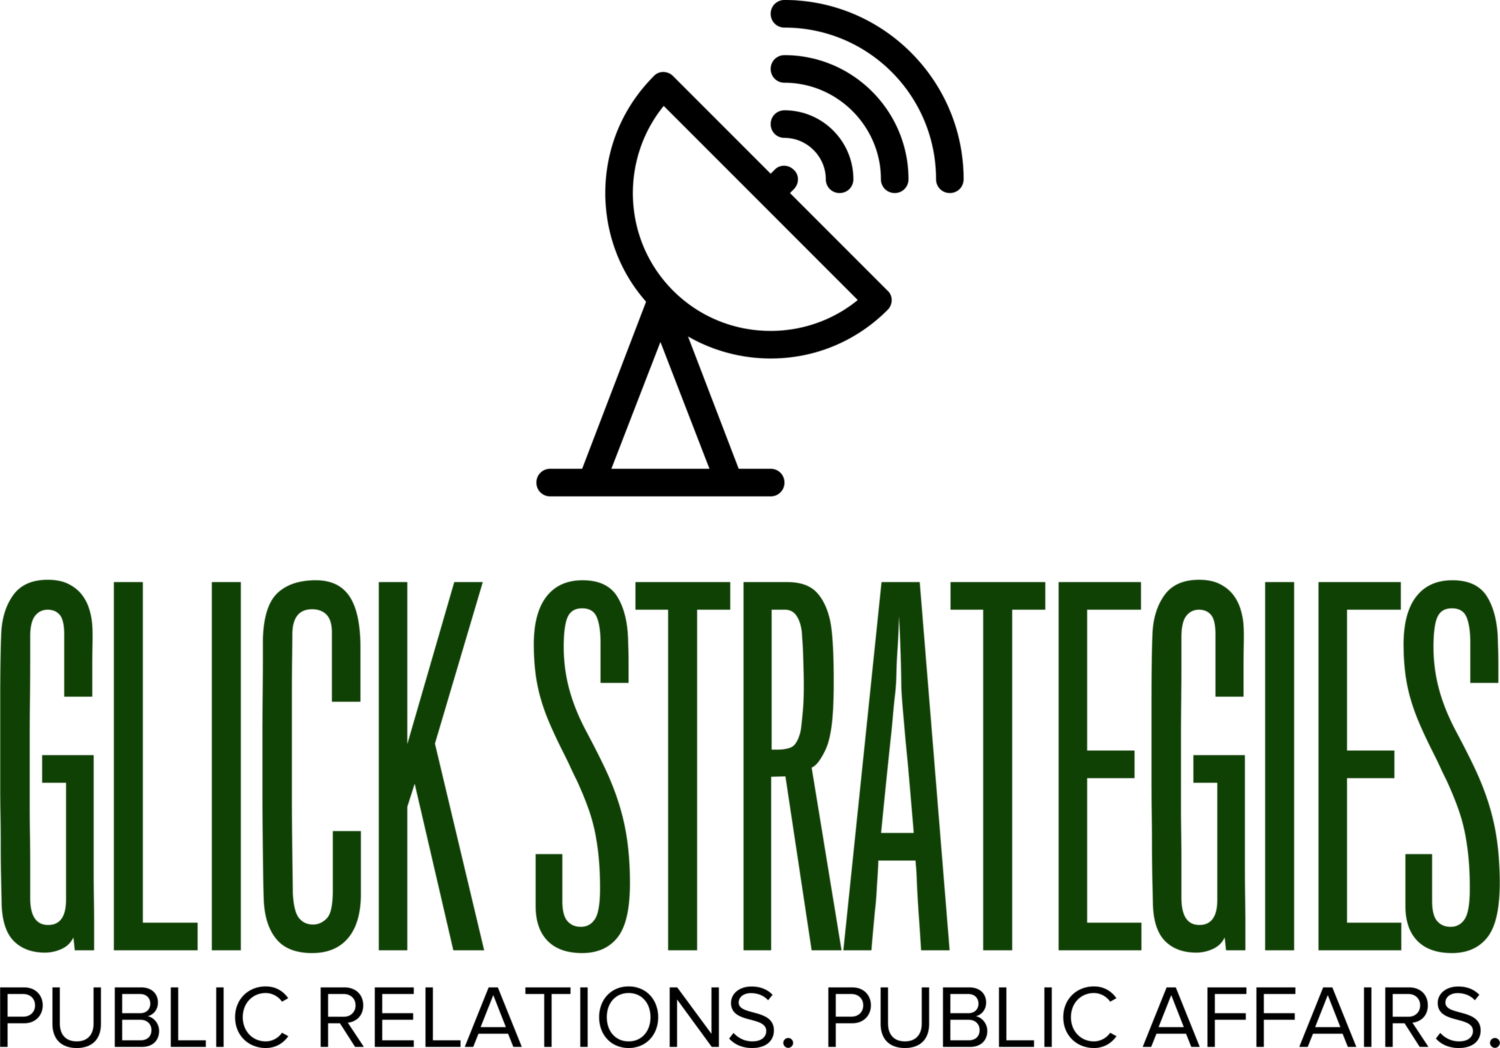 Glick Strategies